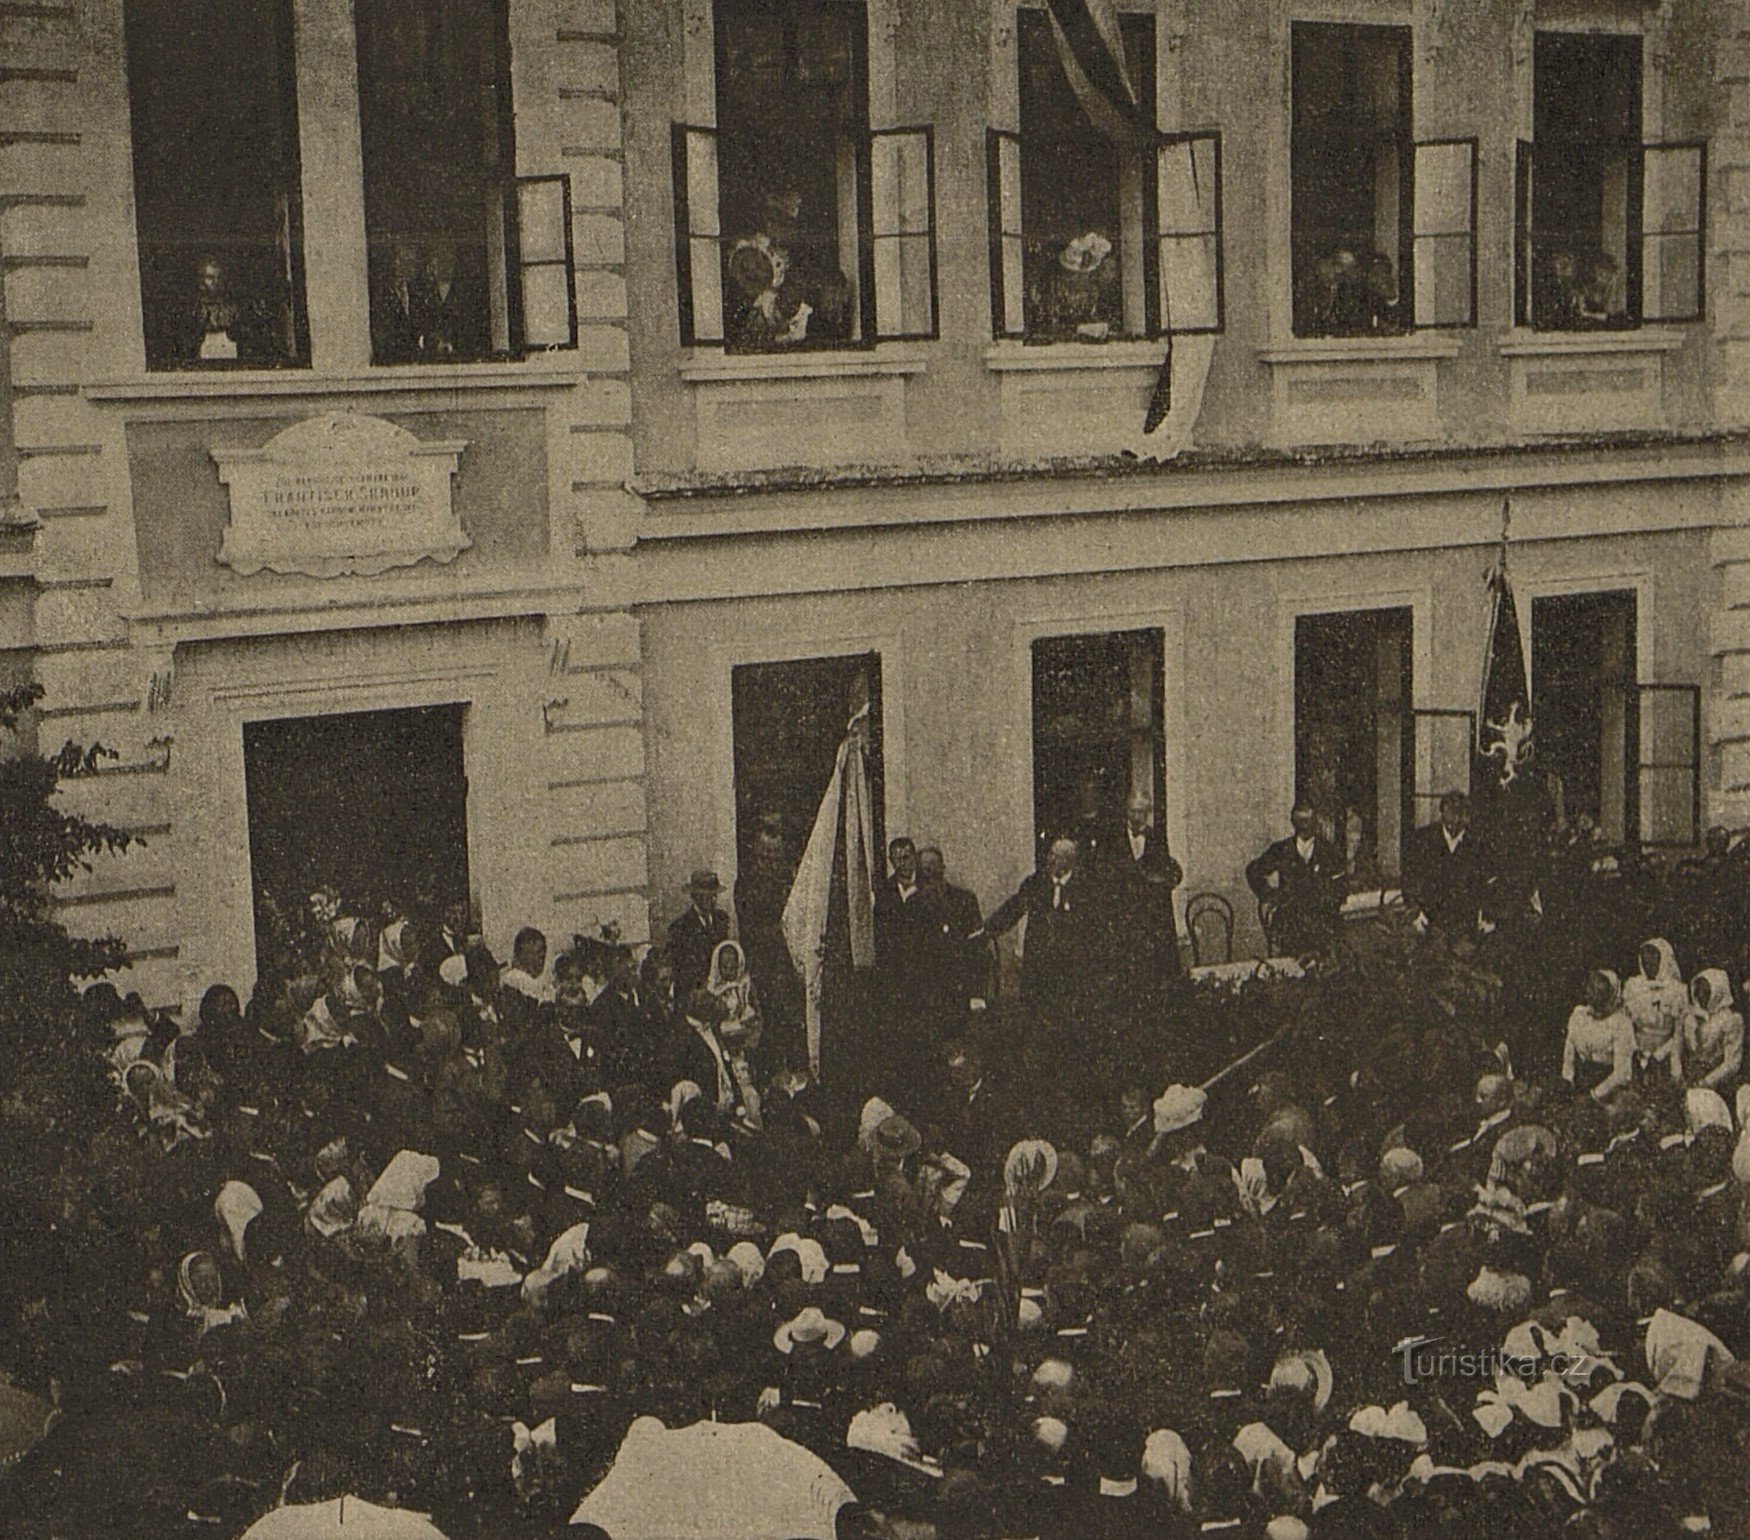 Cérémonie de dévoilement de la plaque commémorative de František Škroup à Osice en 1901